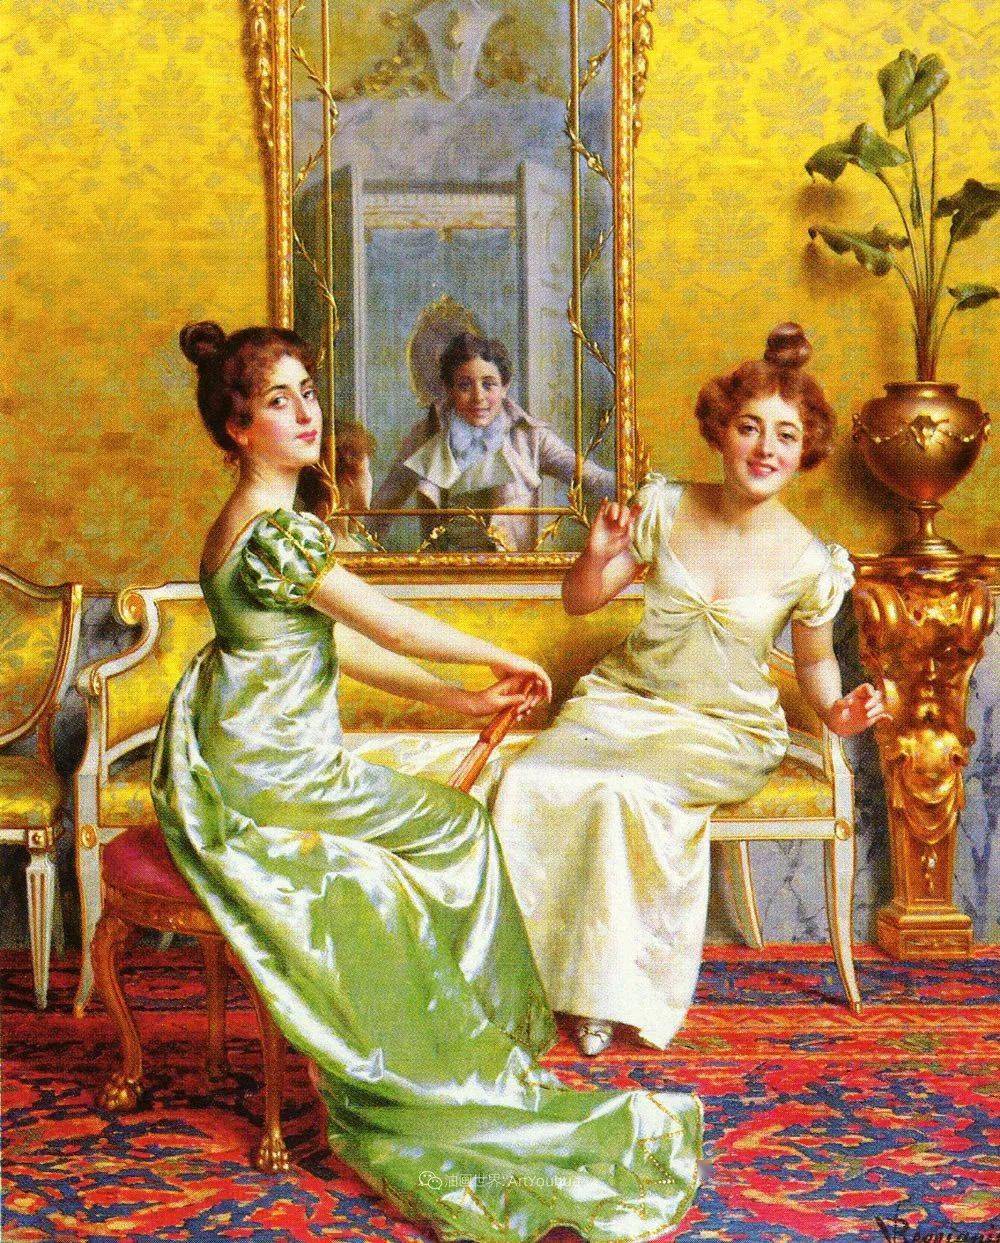 意大利画家维托里奥·雷格尼尼宫廷漂亮女人油画作品欣赏